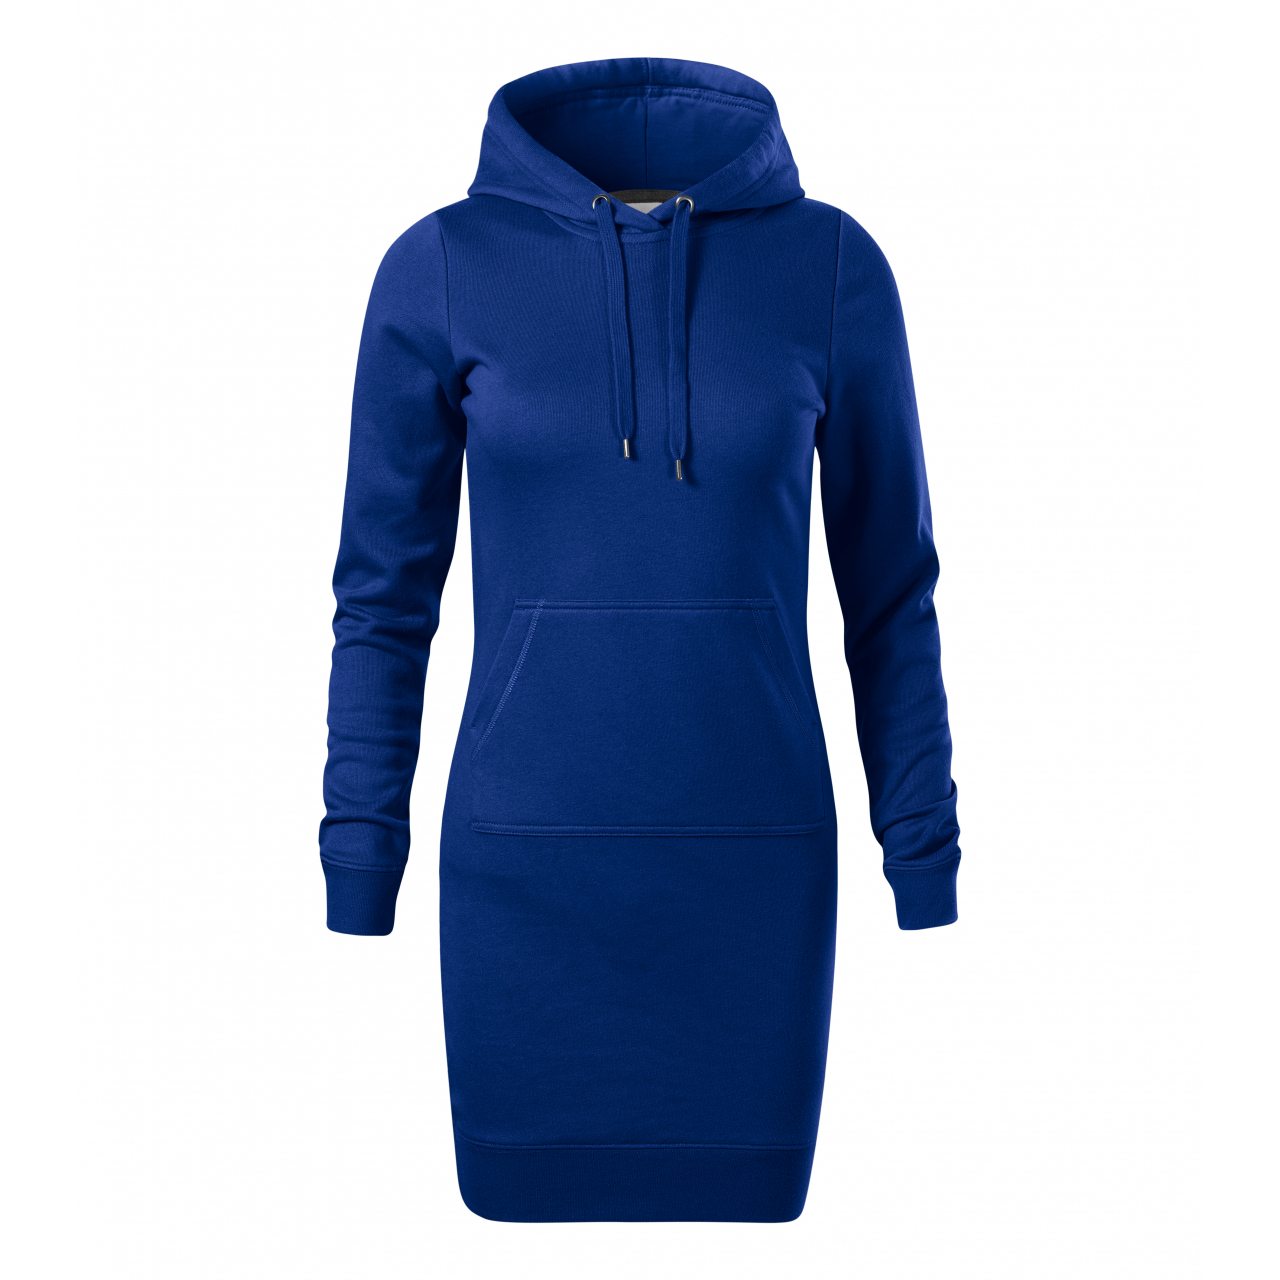 Šaty dámské Malfini Snap - modré, L